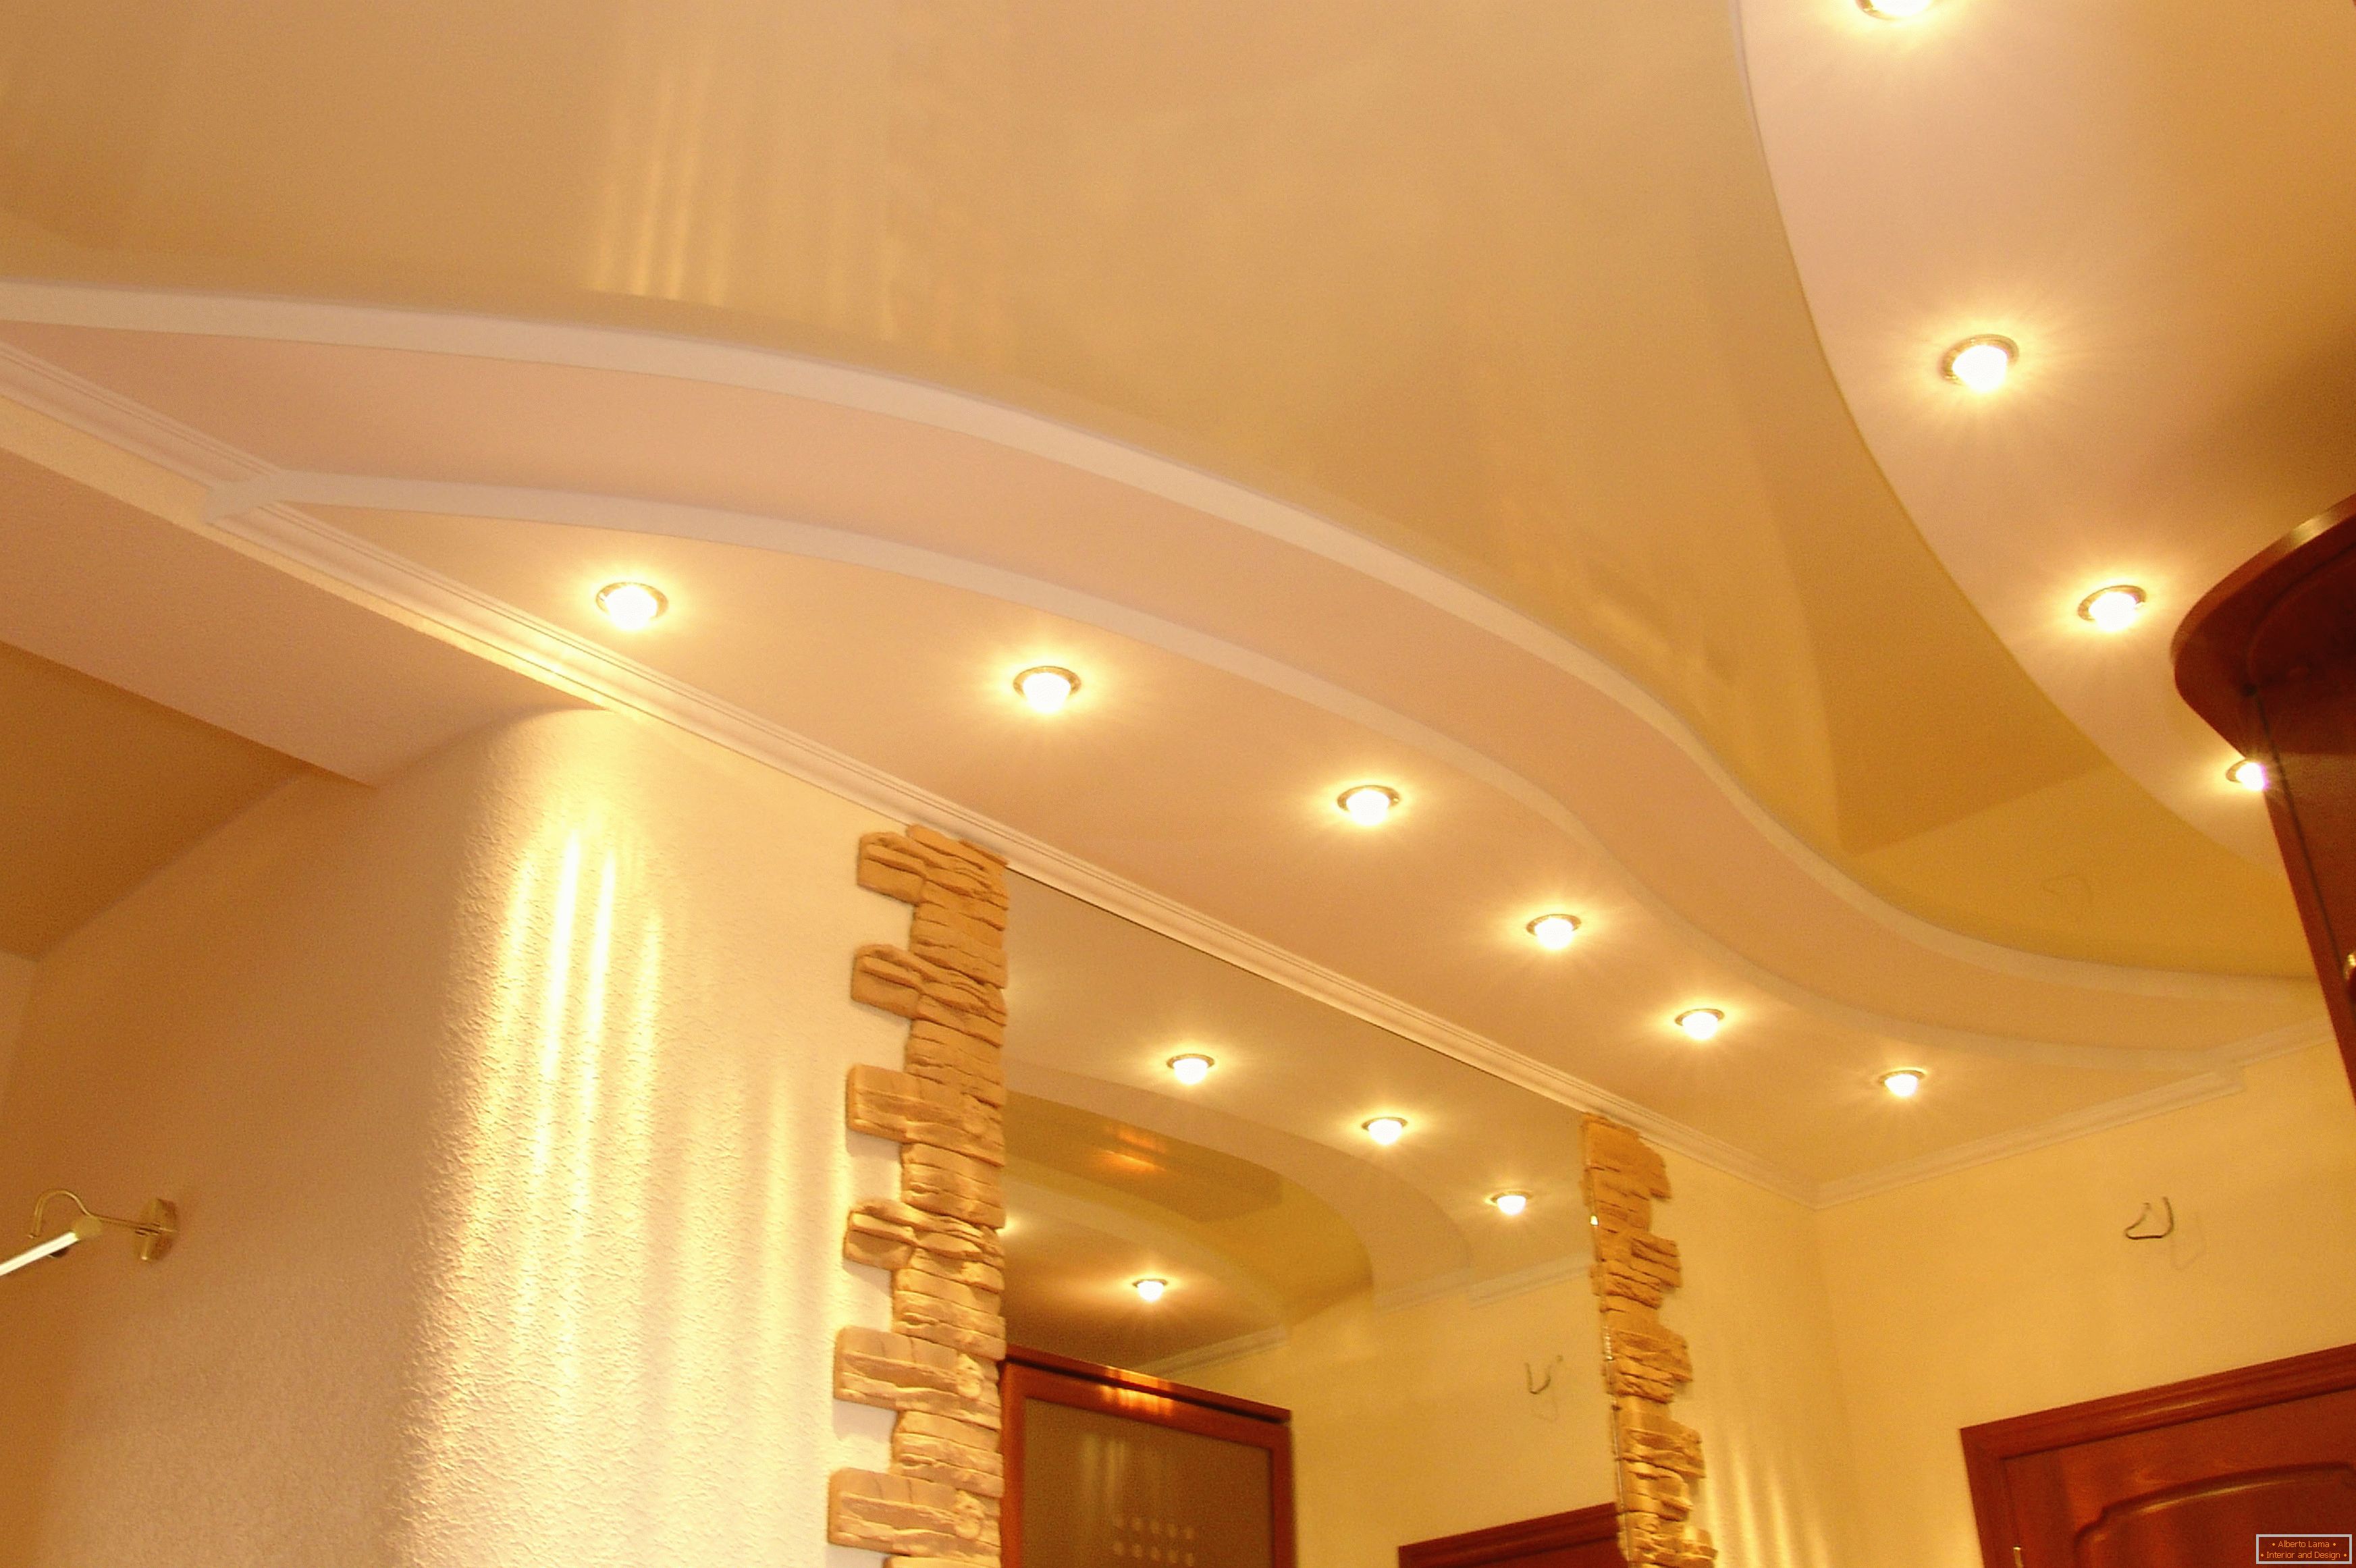 Poprawnie urządzony sufit w korytarzu. Oświetlenie punktowe - najbardziej odpowiednia opcja dla sufitów napinanych PVC.